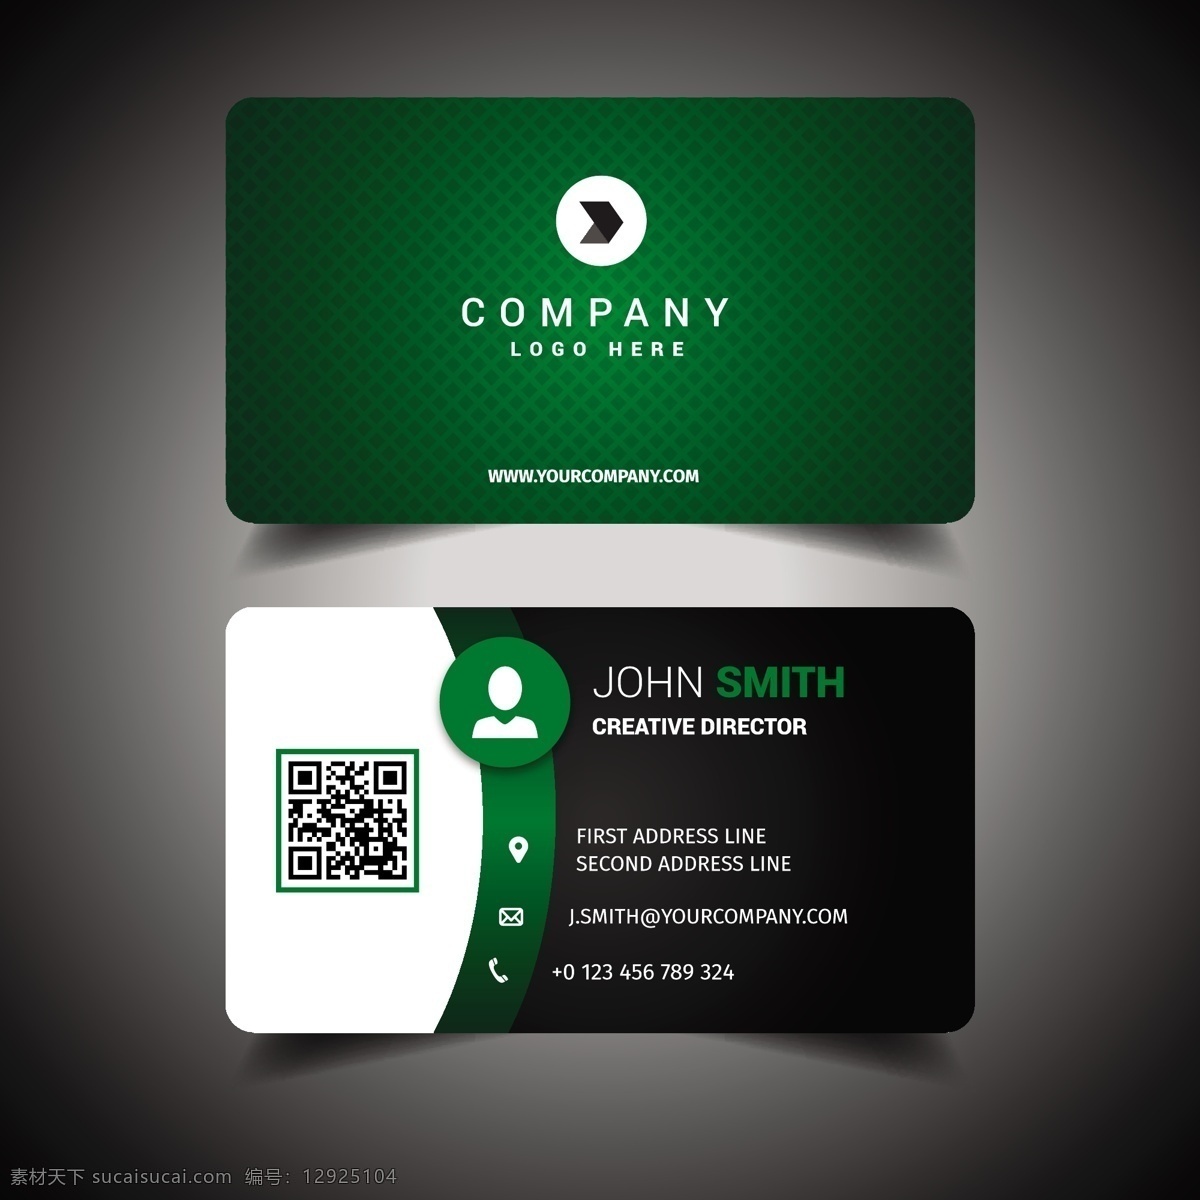 名片模板设计 商标 名片 商业 抽象 卡片 模板 绿色 办公室 颜色 展示 文具 公司 抽象标志 企业标识 现代 身份 身份证